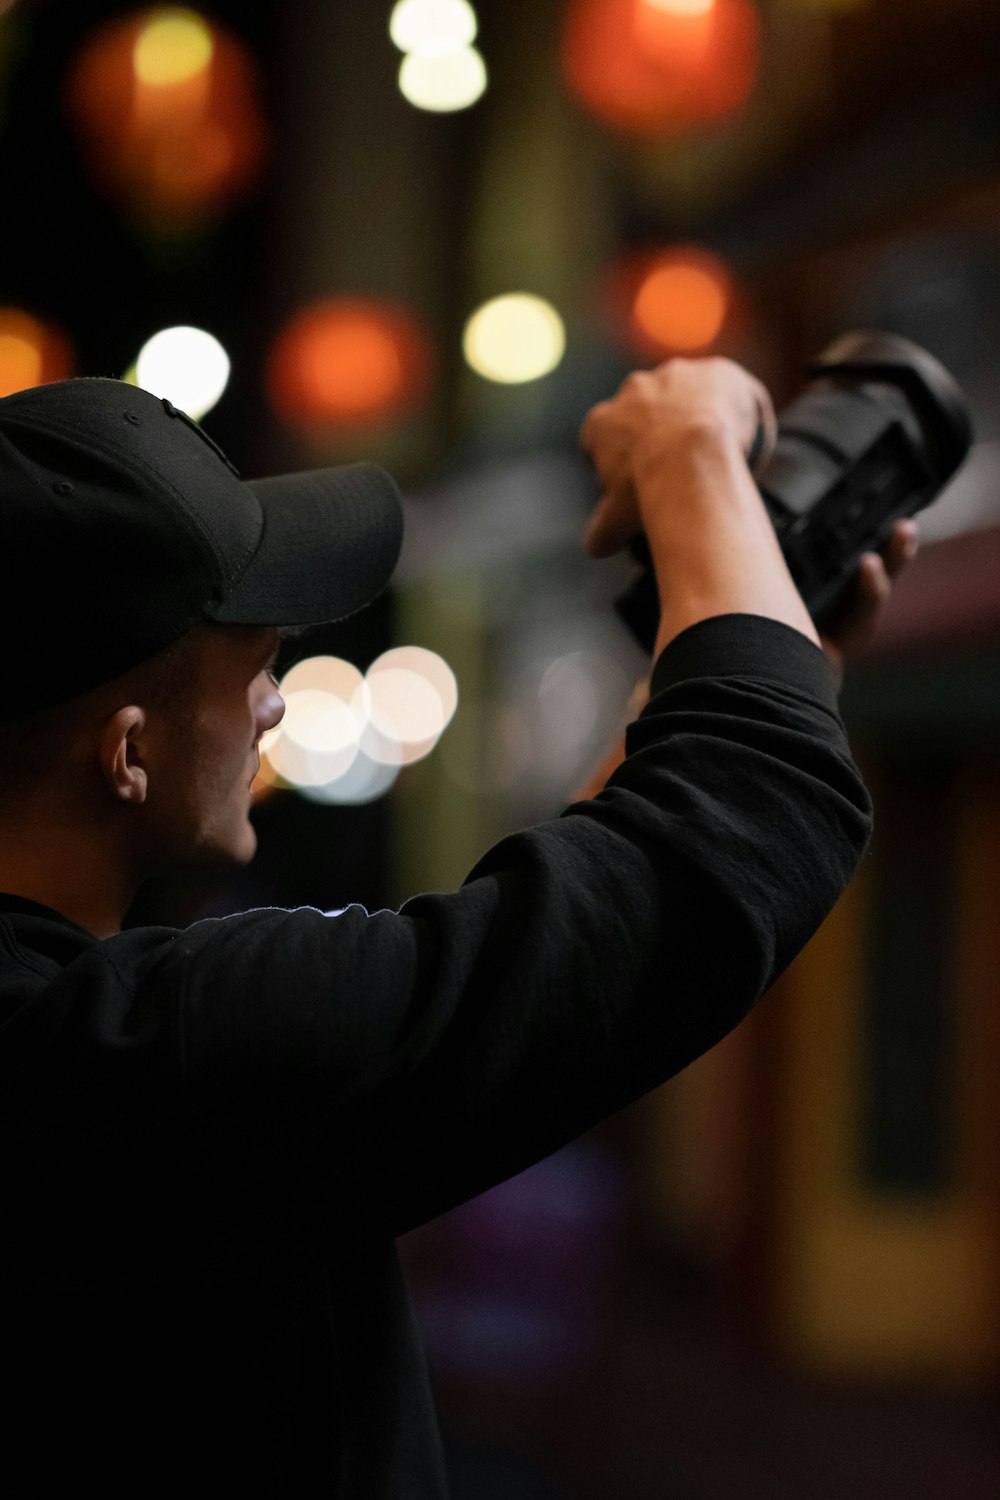 man in black jacket holding black dslr camera